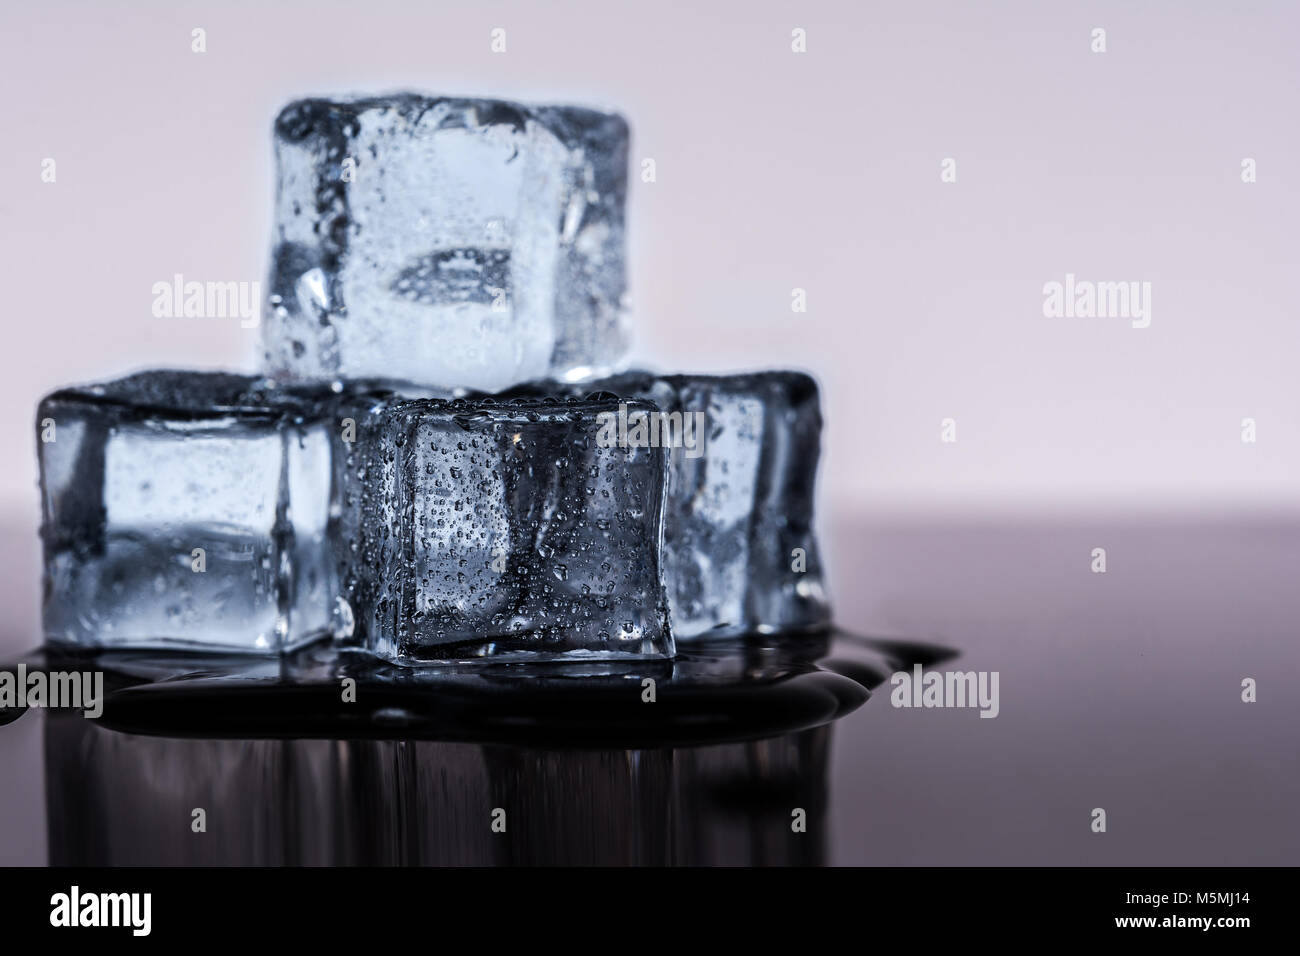 Many ice cubes on black reflection background Stock Photo